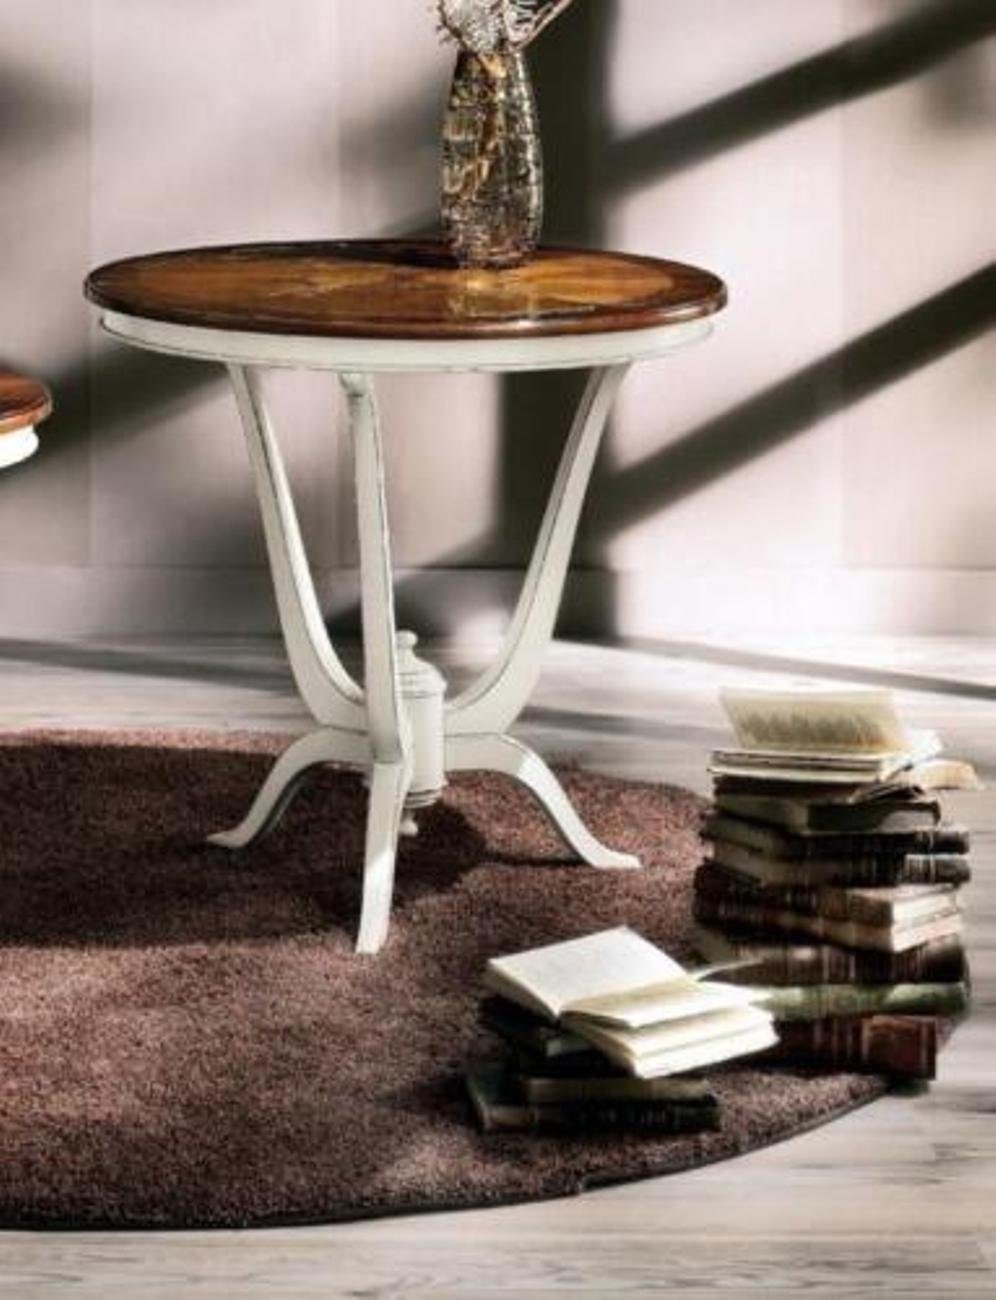 JVmoebel Beistelltisch (Beistelltisch), Beistelltisch Kaffeetisch Design Wohnzimmertisch Tische Tisch